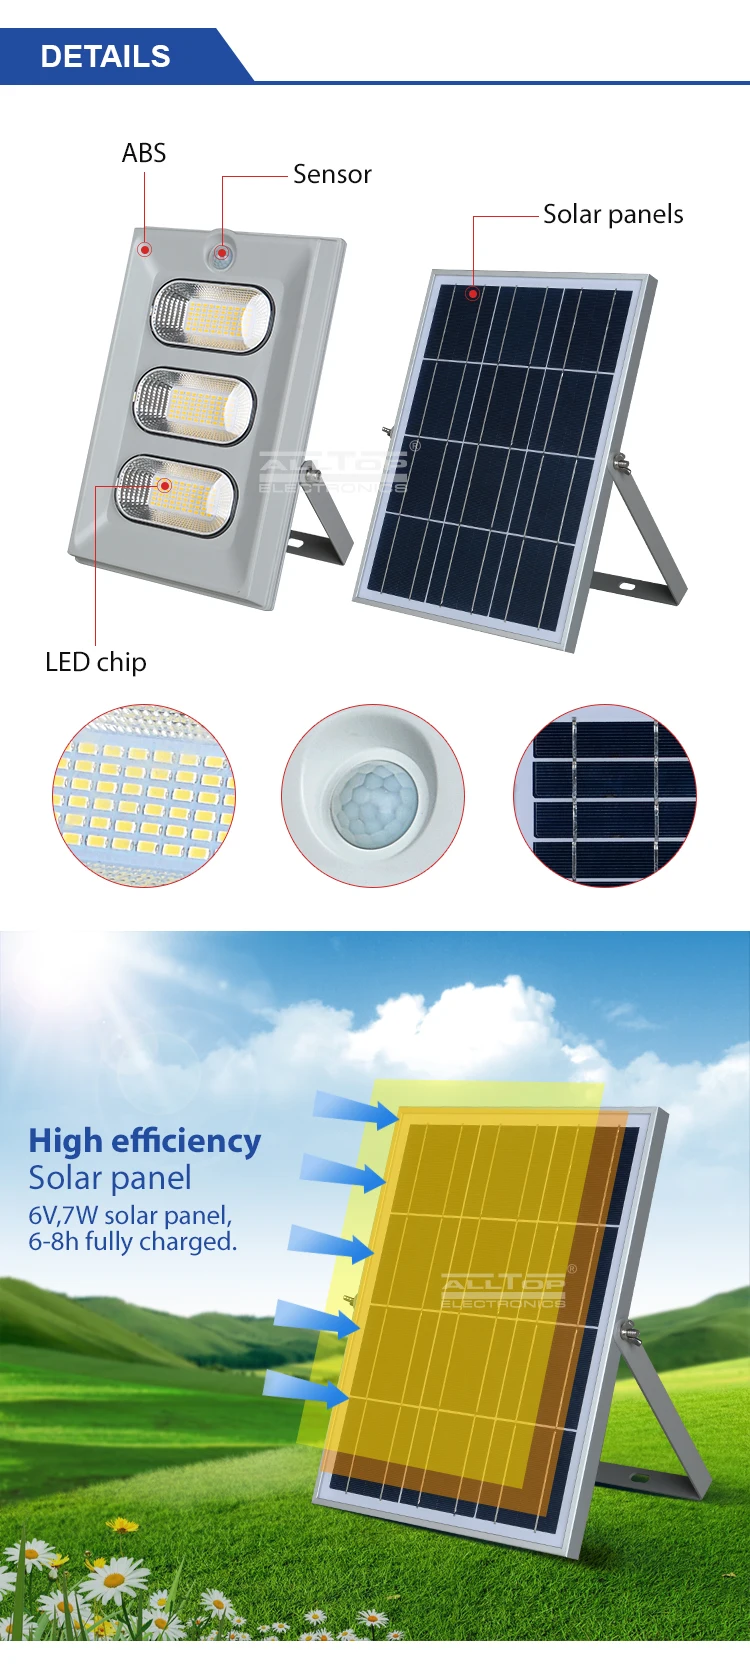 ALLTOP High efficiency IP66 outdoor waterproof 50w 100w 150w led solar flood light